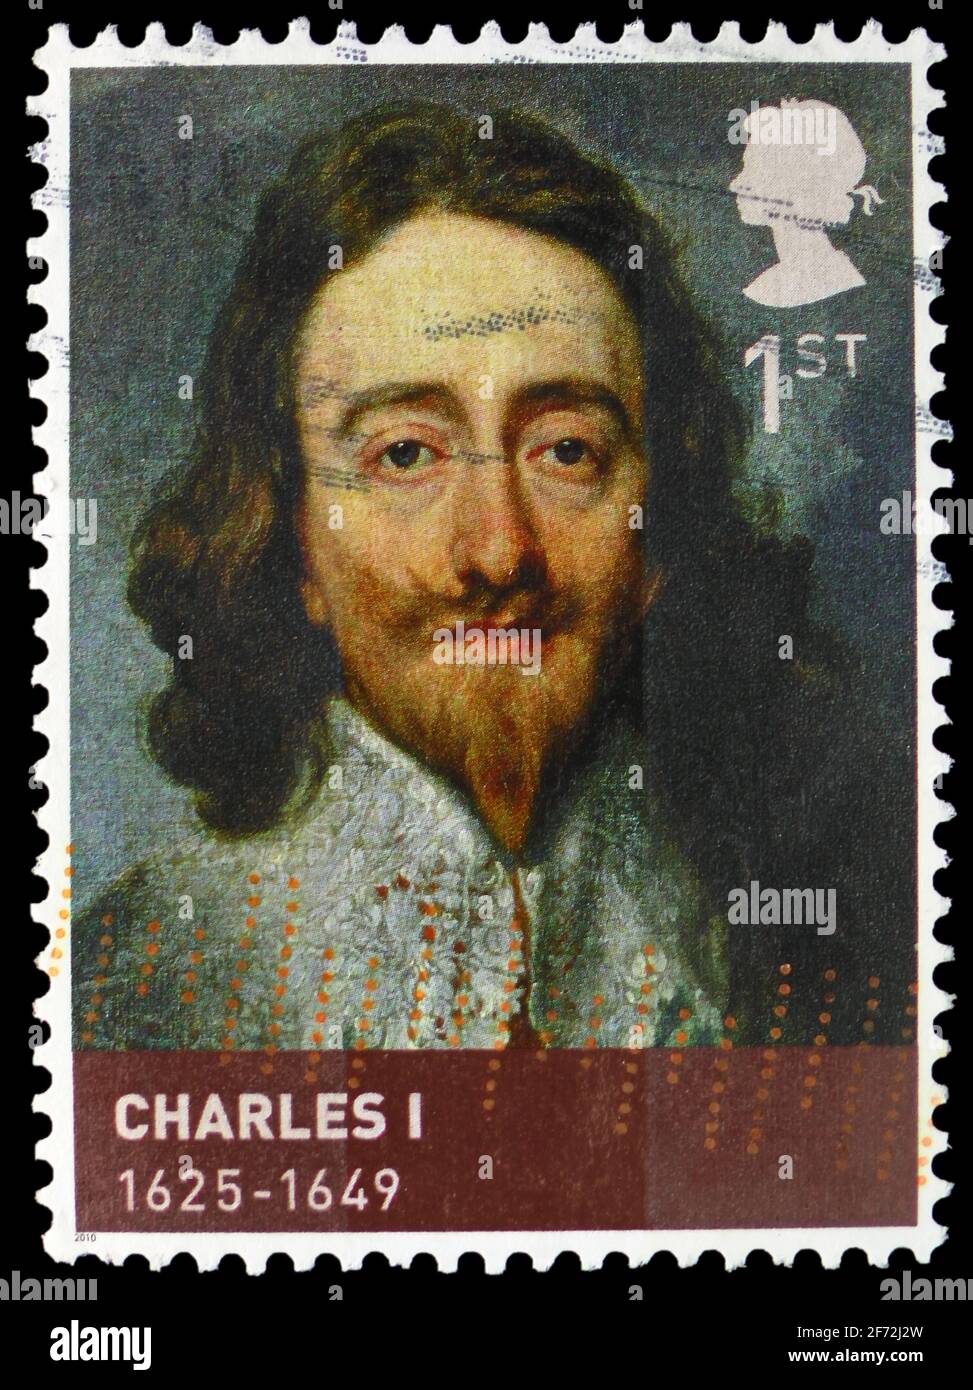 MOSCOU, RUSSIE - 22 DÉCEMBRE 2020 : le timbre-poste imprimé au Royaume-Uni montre le roi Charles I, les rois et les reines, la série de la Maison de Stuart, vers 2 Banque D'Images